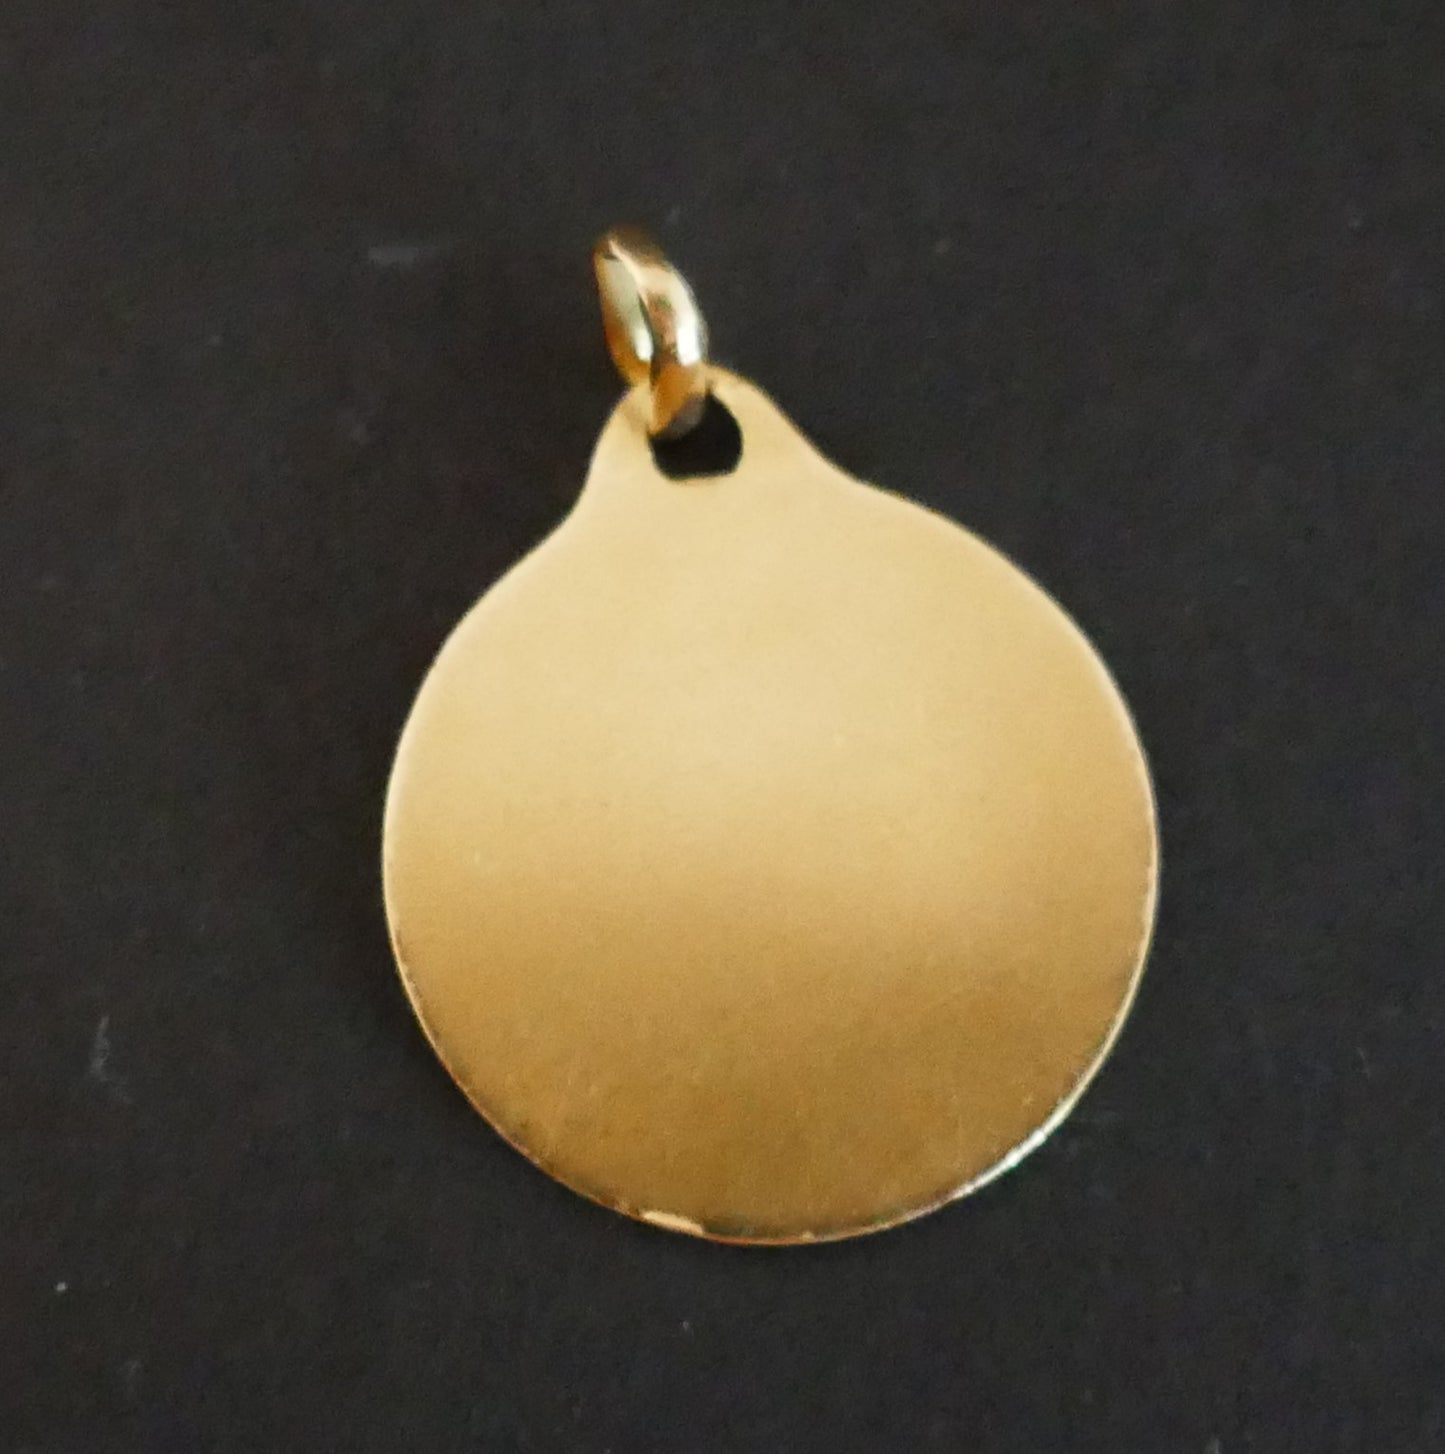 Médaille Augis, Diamant, Rubis Calibrés, Or 18 Carats